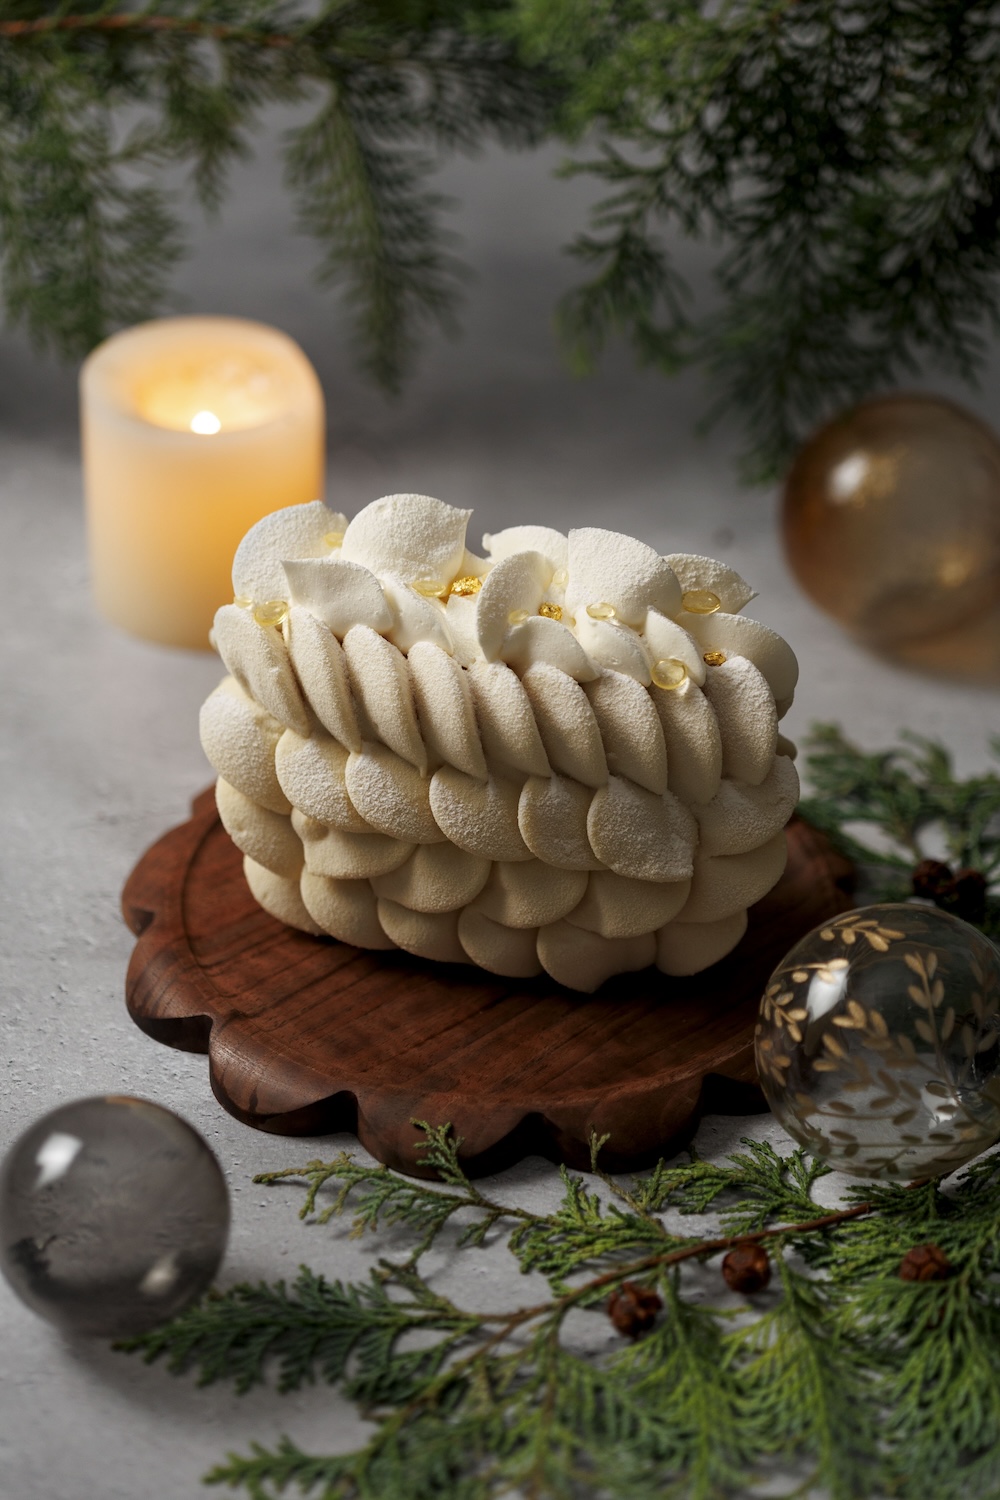 京都・河原町通りに位置する複合型商業施設「GOOD NATURE STATION」のオリジナルパティスリー&チョコレートブランド「RAU」は、ブランド初となるクリスマスケーキ「RAU Christmas Dessert」の予約を受付中だ。価格は4号相当のサイズが税込み5,700円、6号相当のサイズが税込み7,900円。